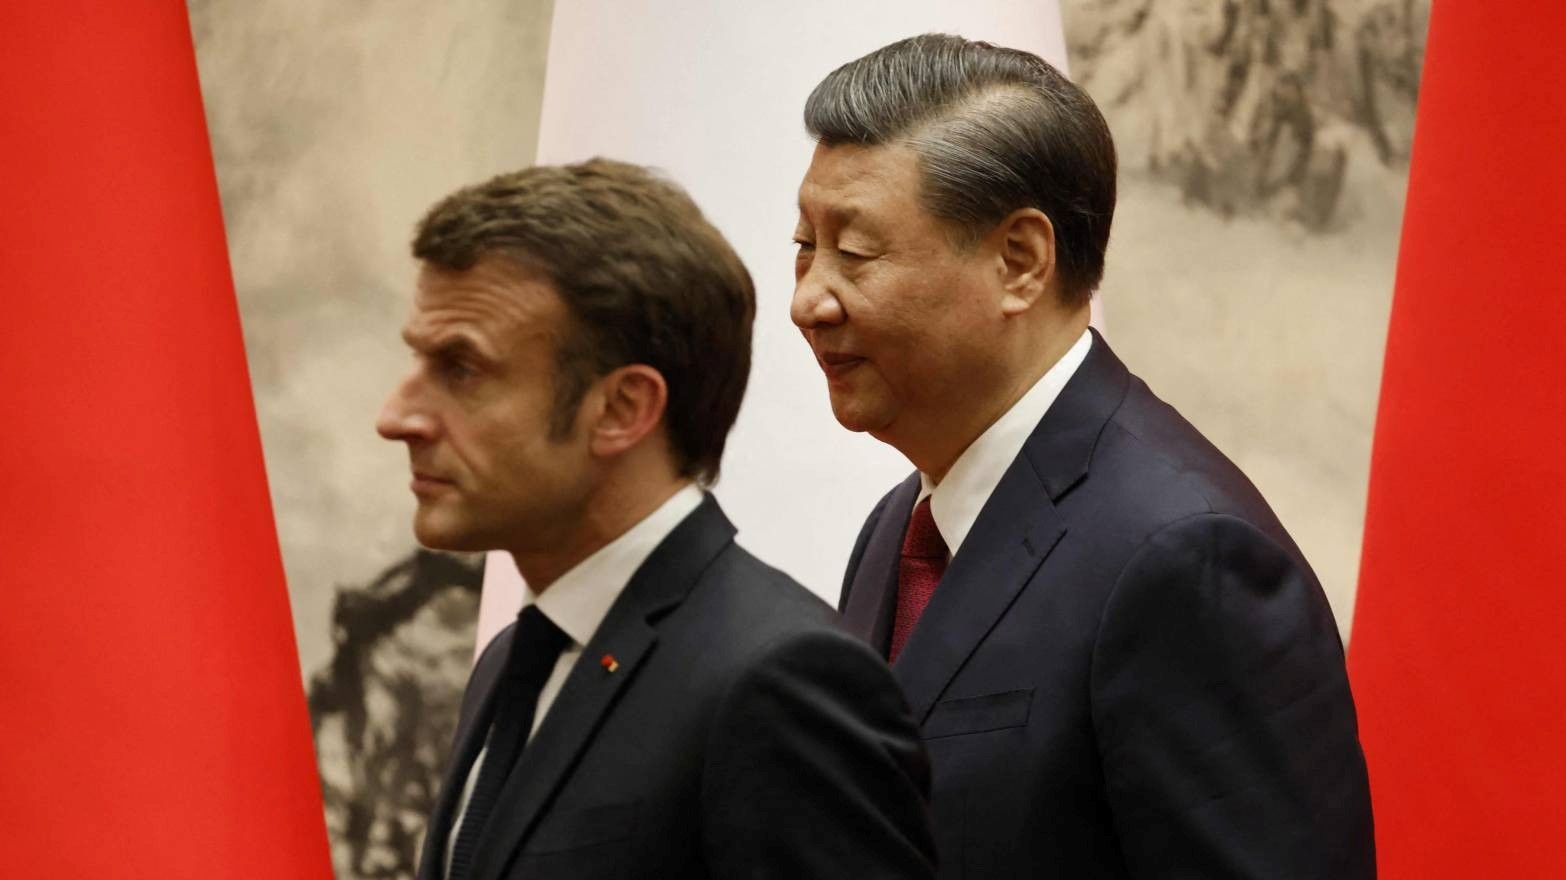 الرئيس الفرنسي إيمانويل ماكرون ونظيره الصيني شي جينبينغ يصلان إلى مؤتمر صحفي مشترك في بكين الخميس 6 أبريل 2023